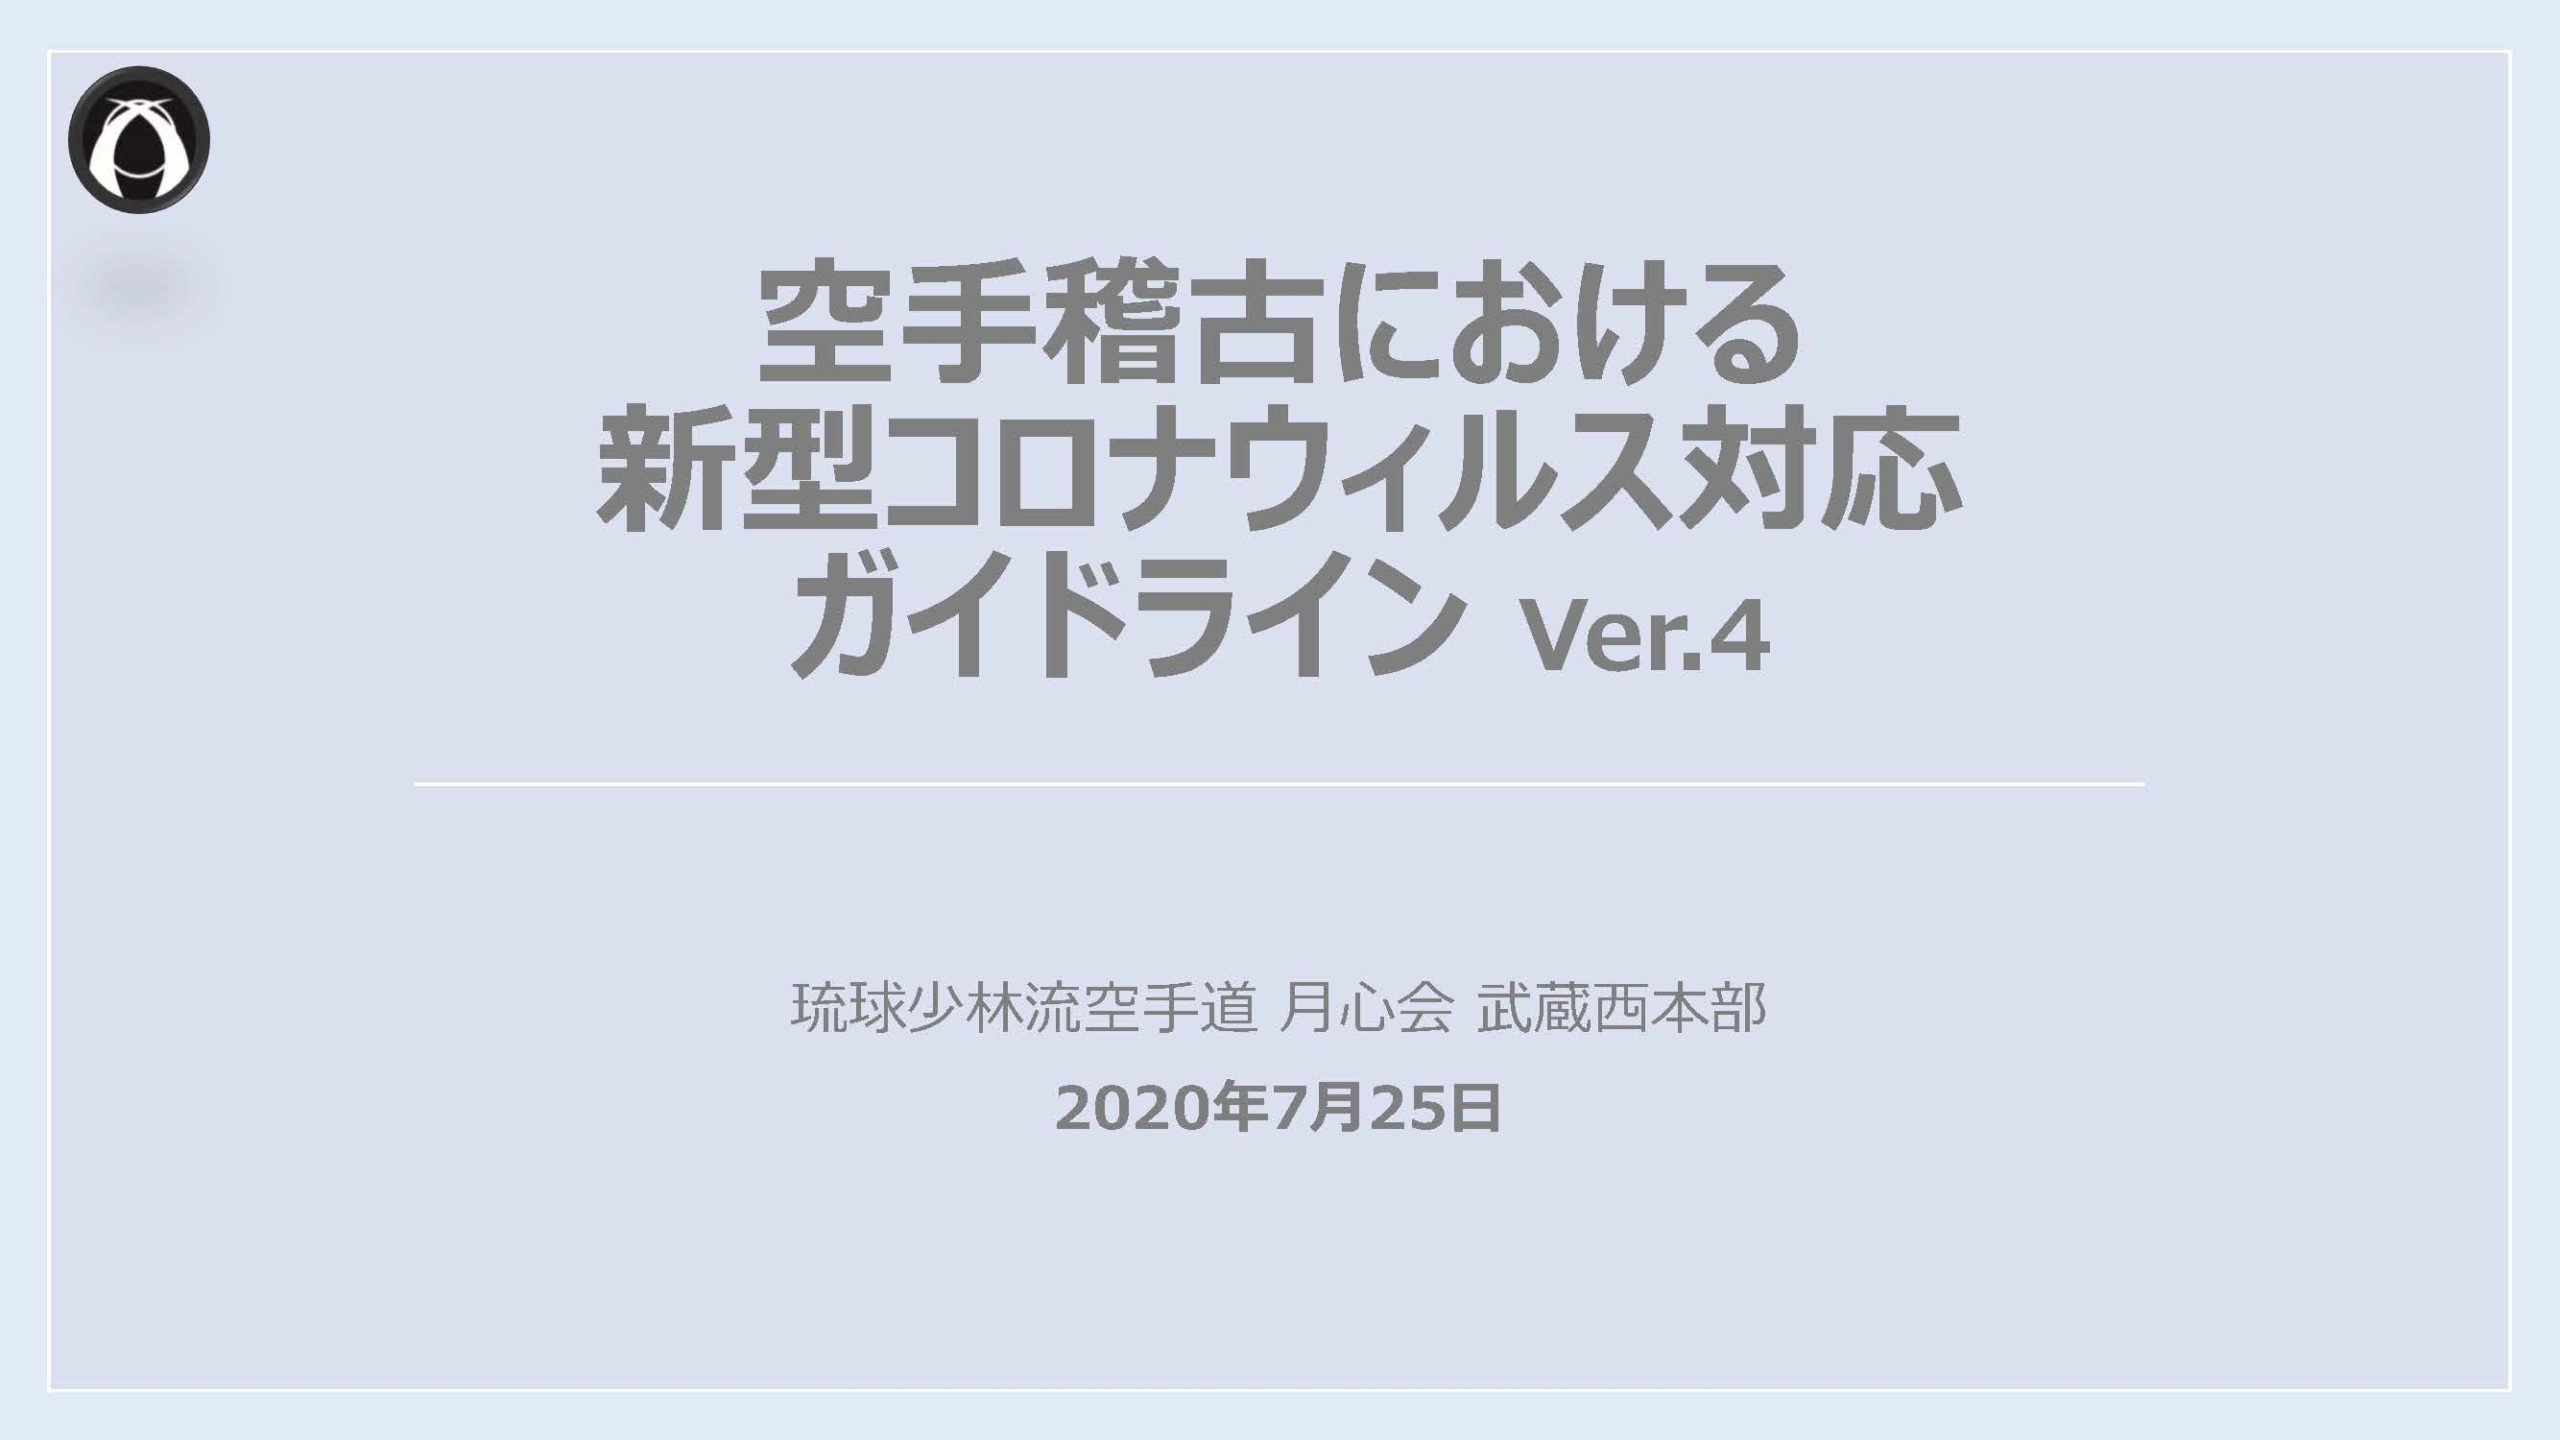 ガイドライン 武蔵西本部 Ver.4